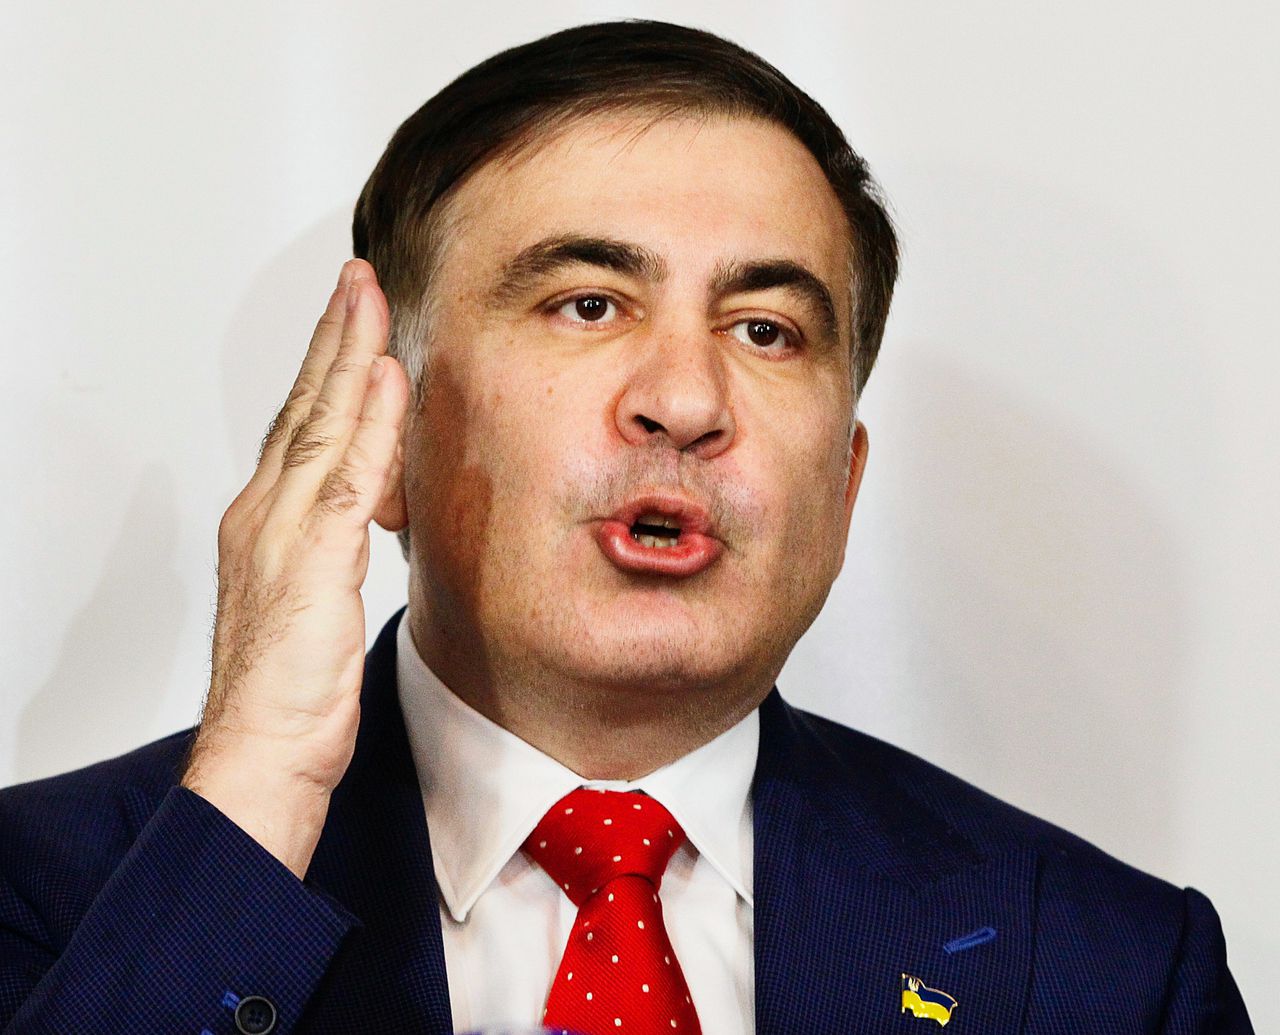 Saakasjvili arriveert in Nederland na ‘ontvoering’ uit Oekraïne 